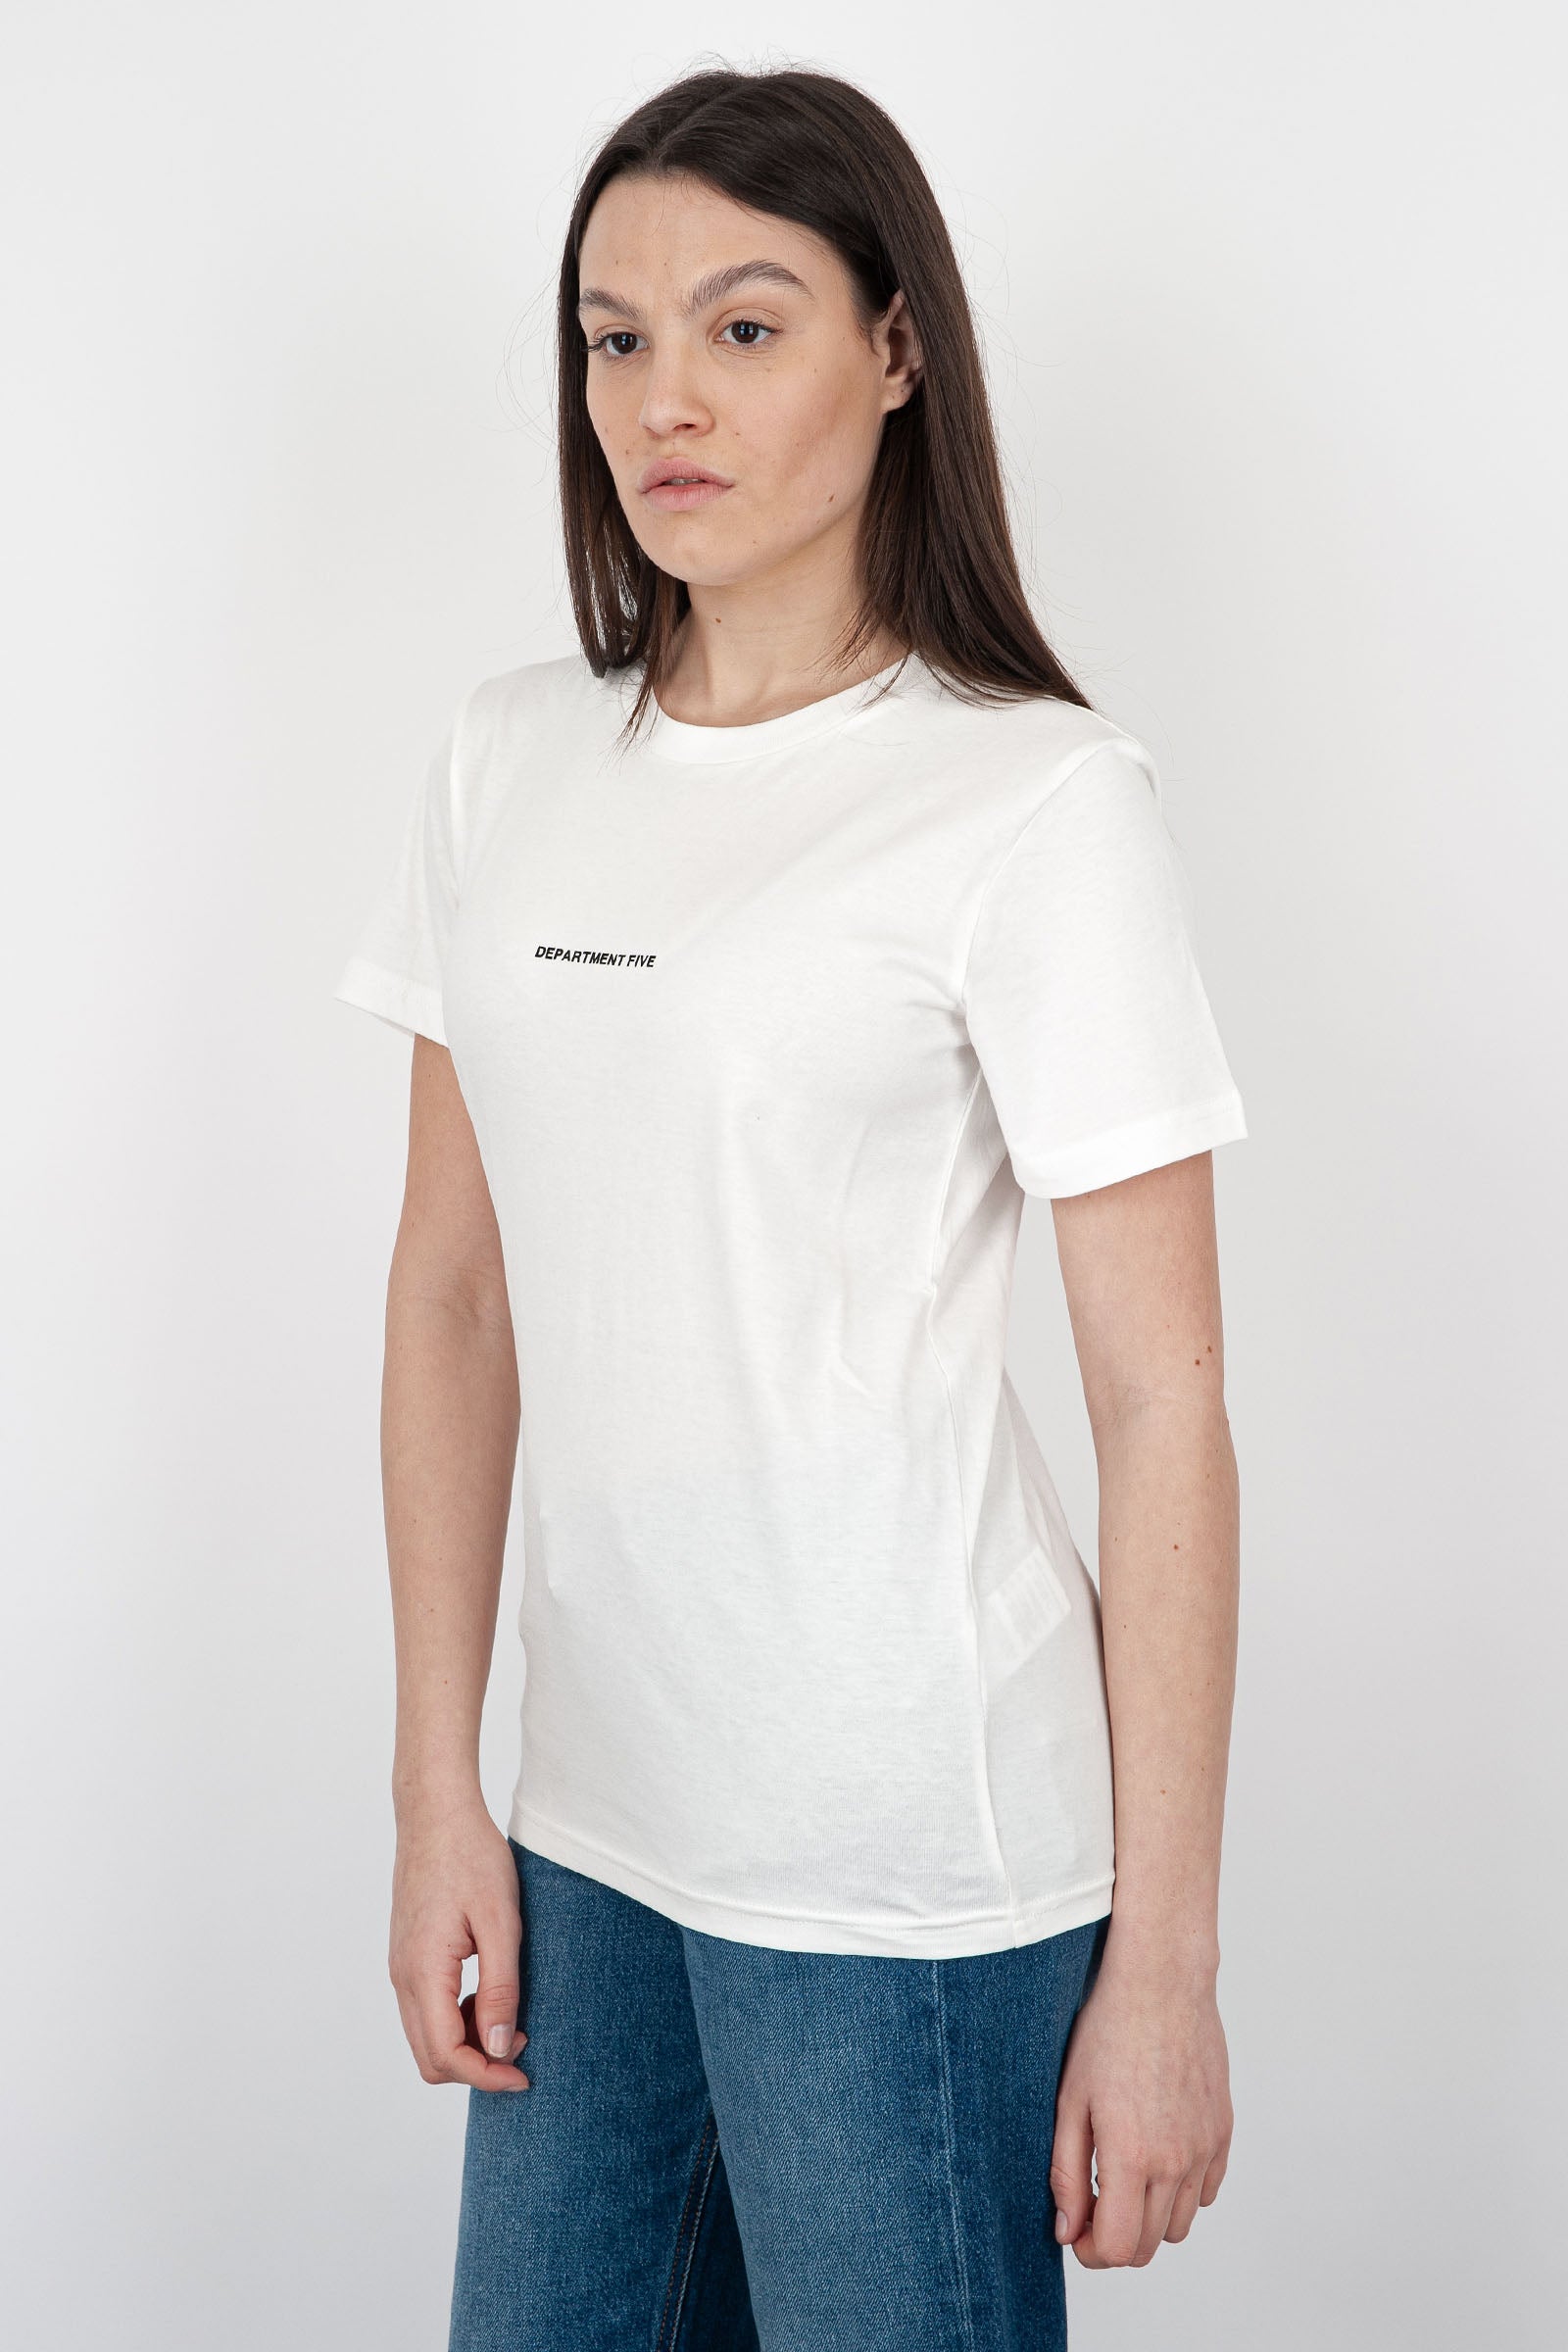 Department Five Crewneck Fleur T-Shirt in White Cotton - 3